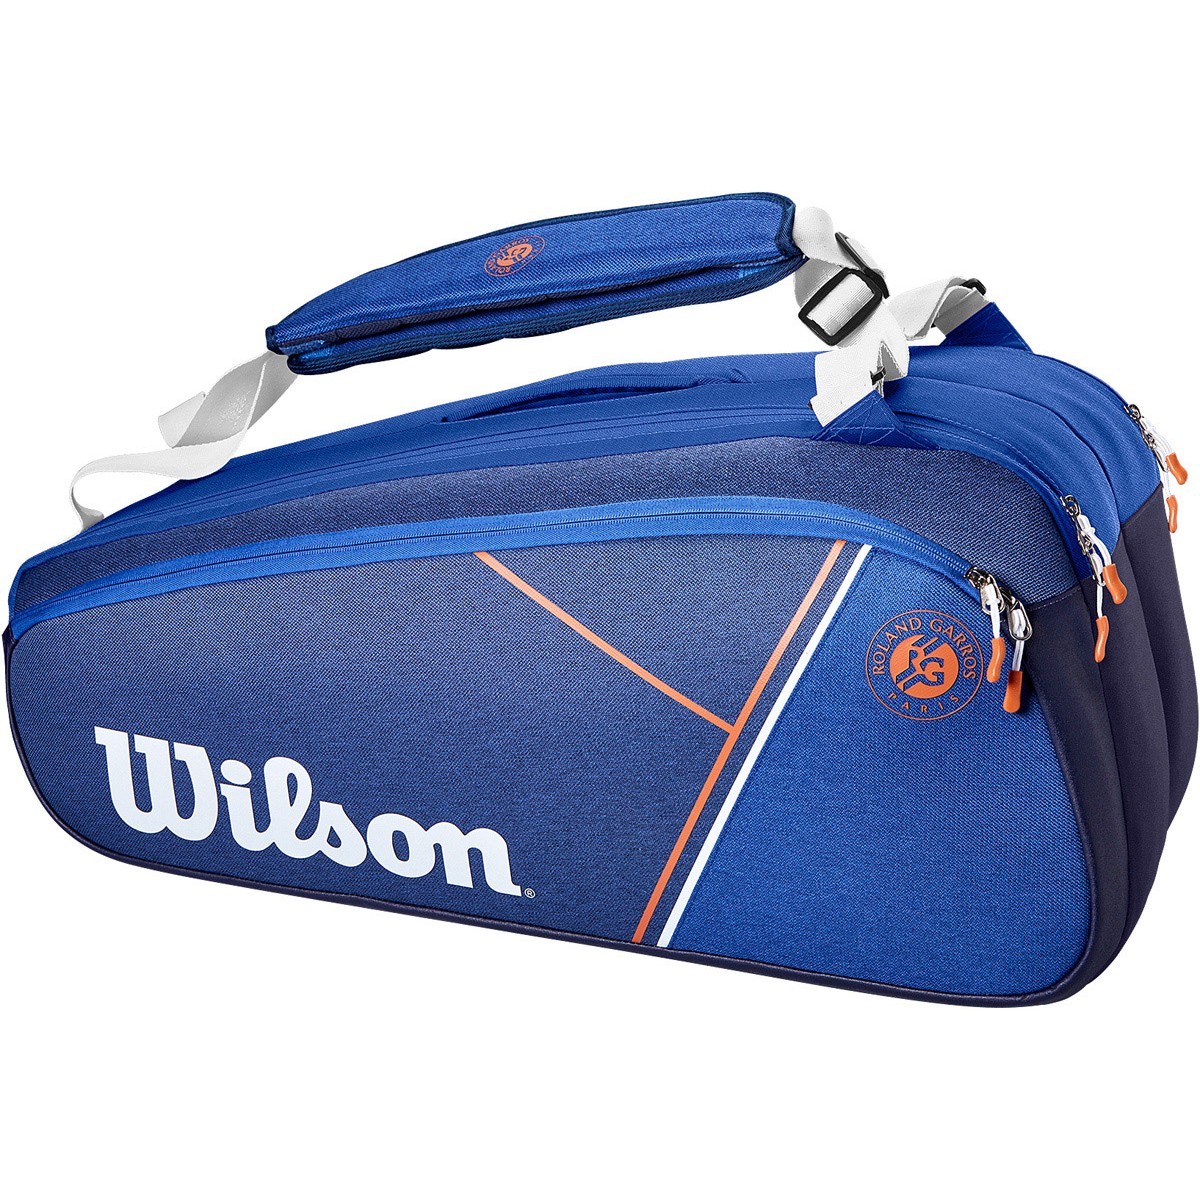 Теннисная сумка Wilson Roland Garros Super Tour 9 Pk Bag blue/white clay red